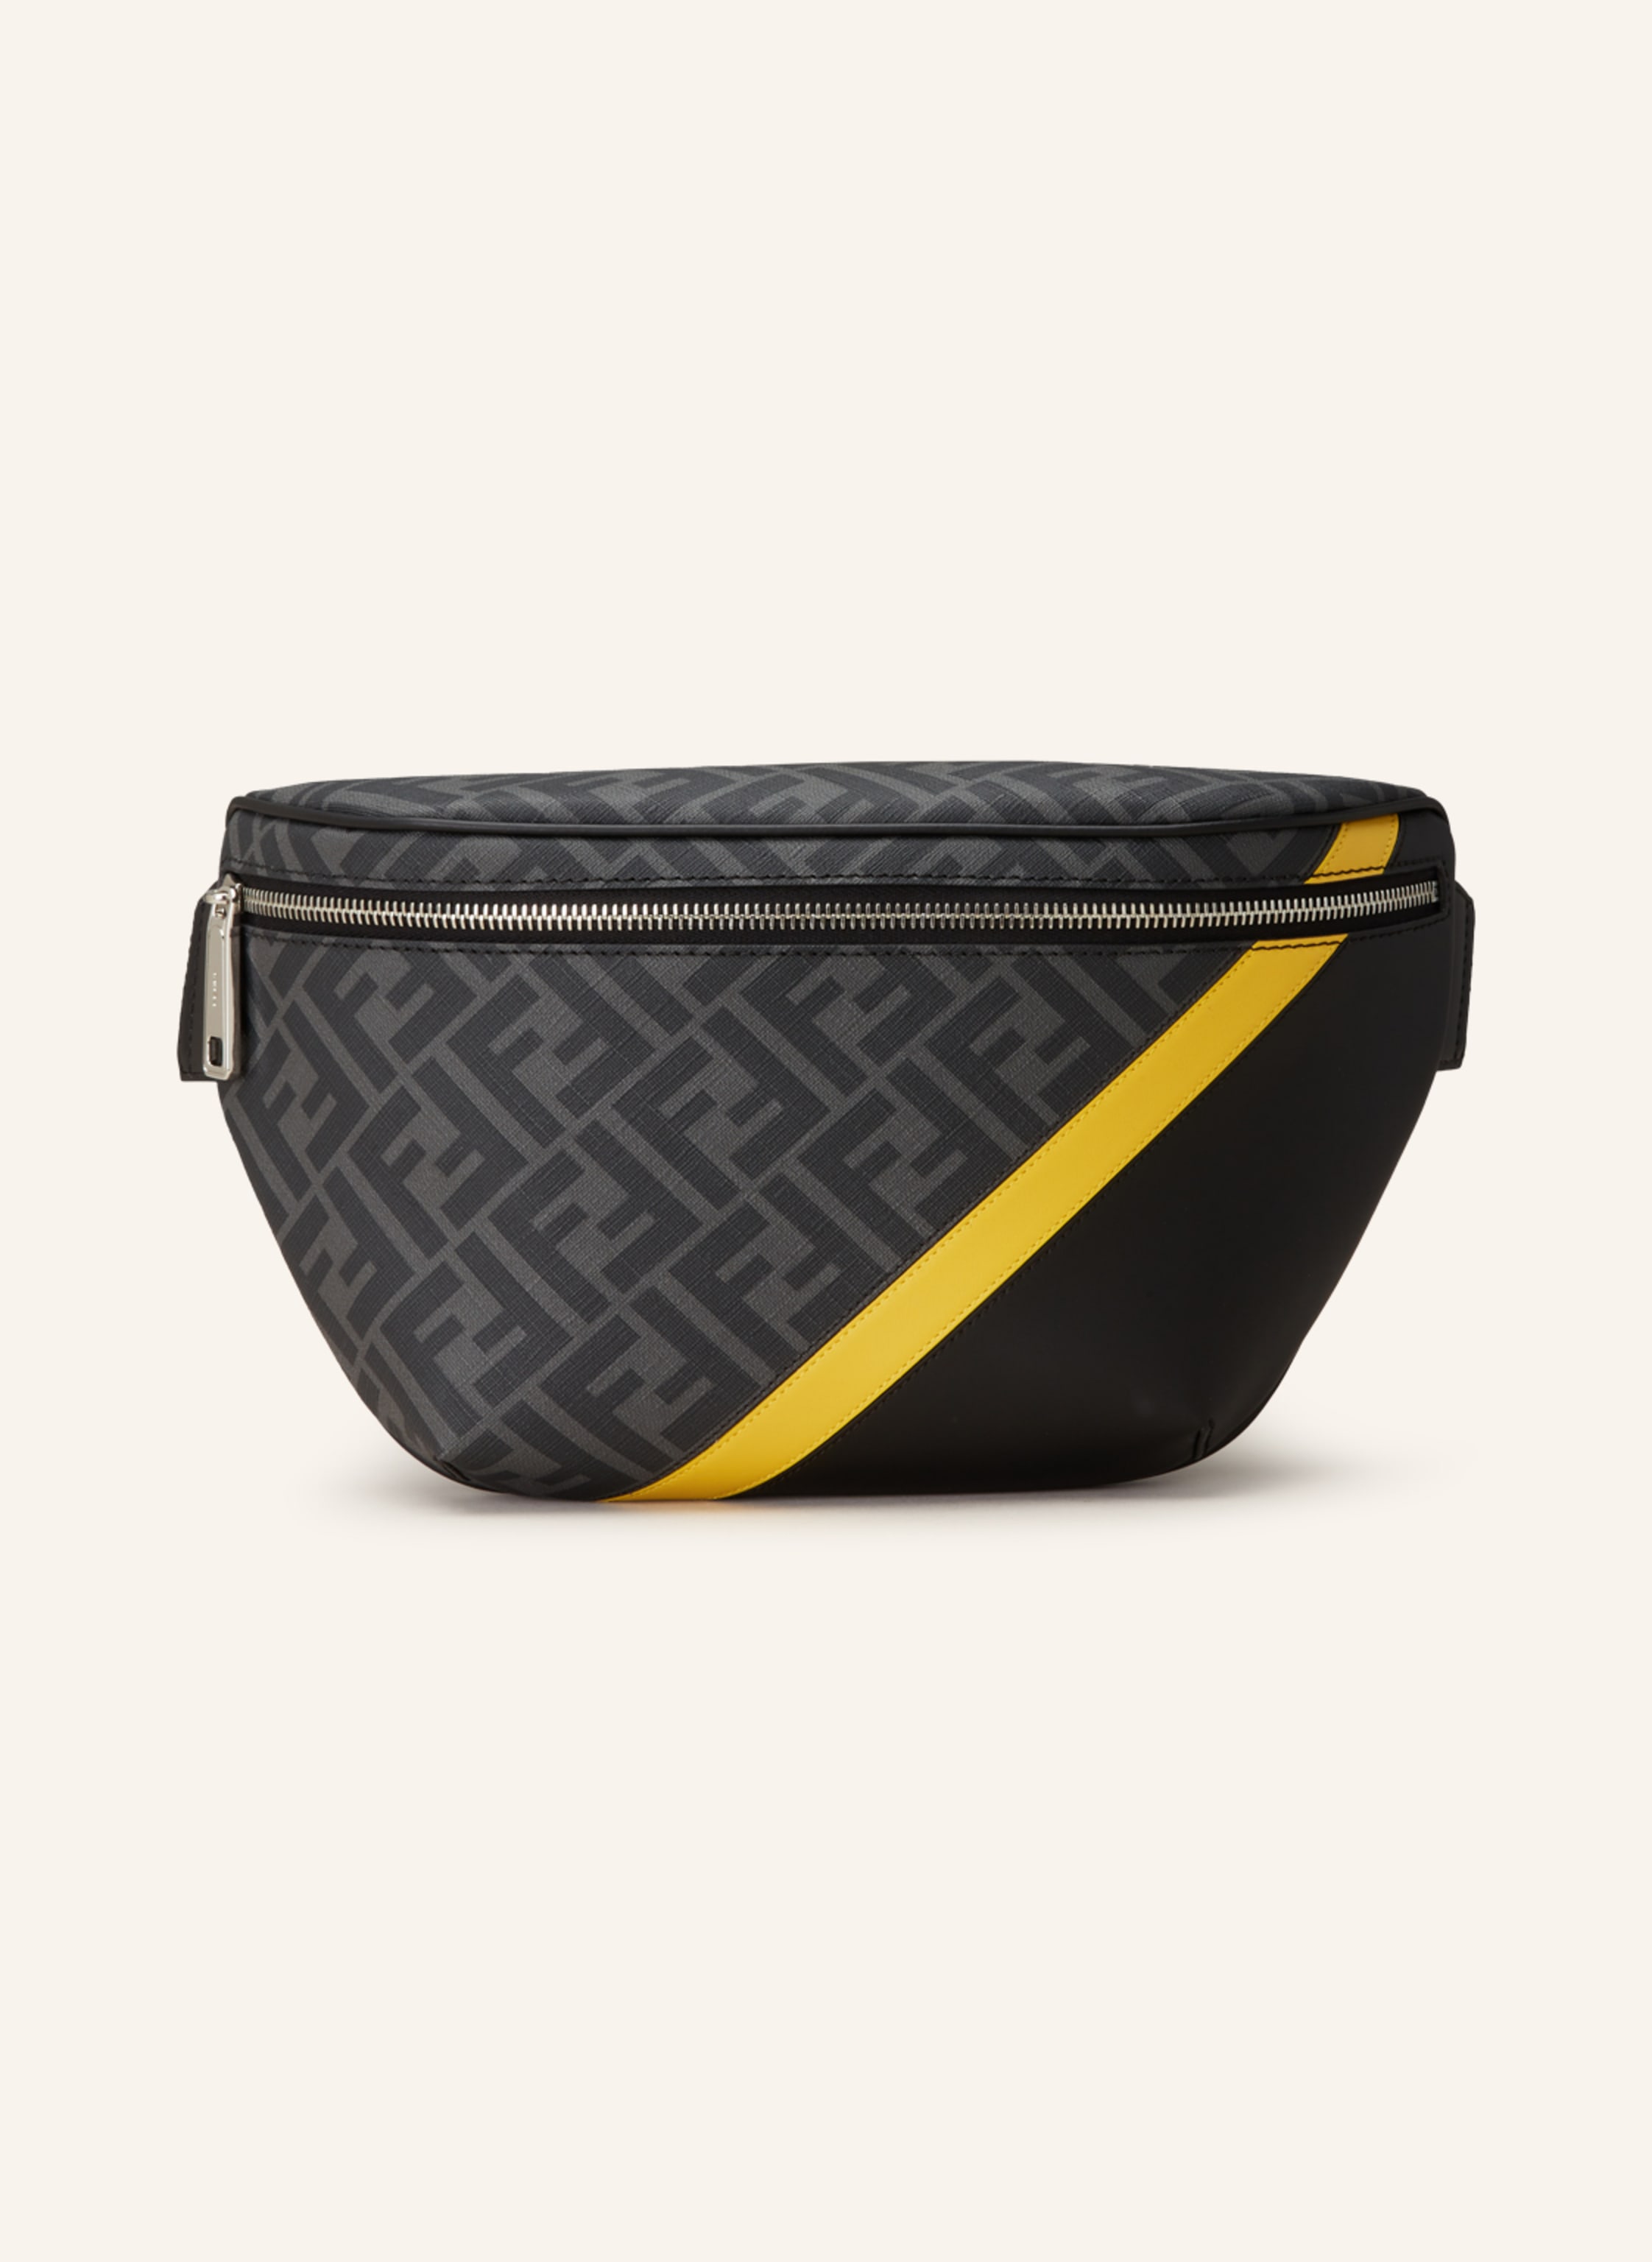 FENDI Waist bag in gray/ black/ dark yellow